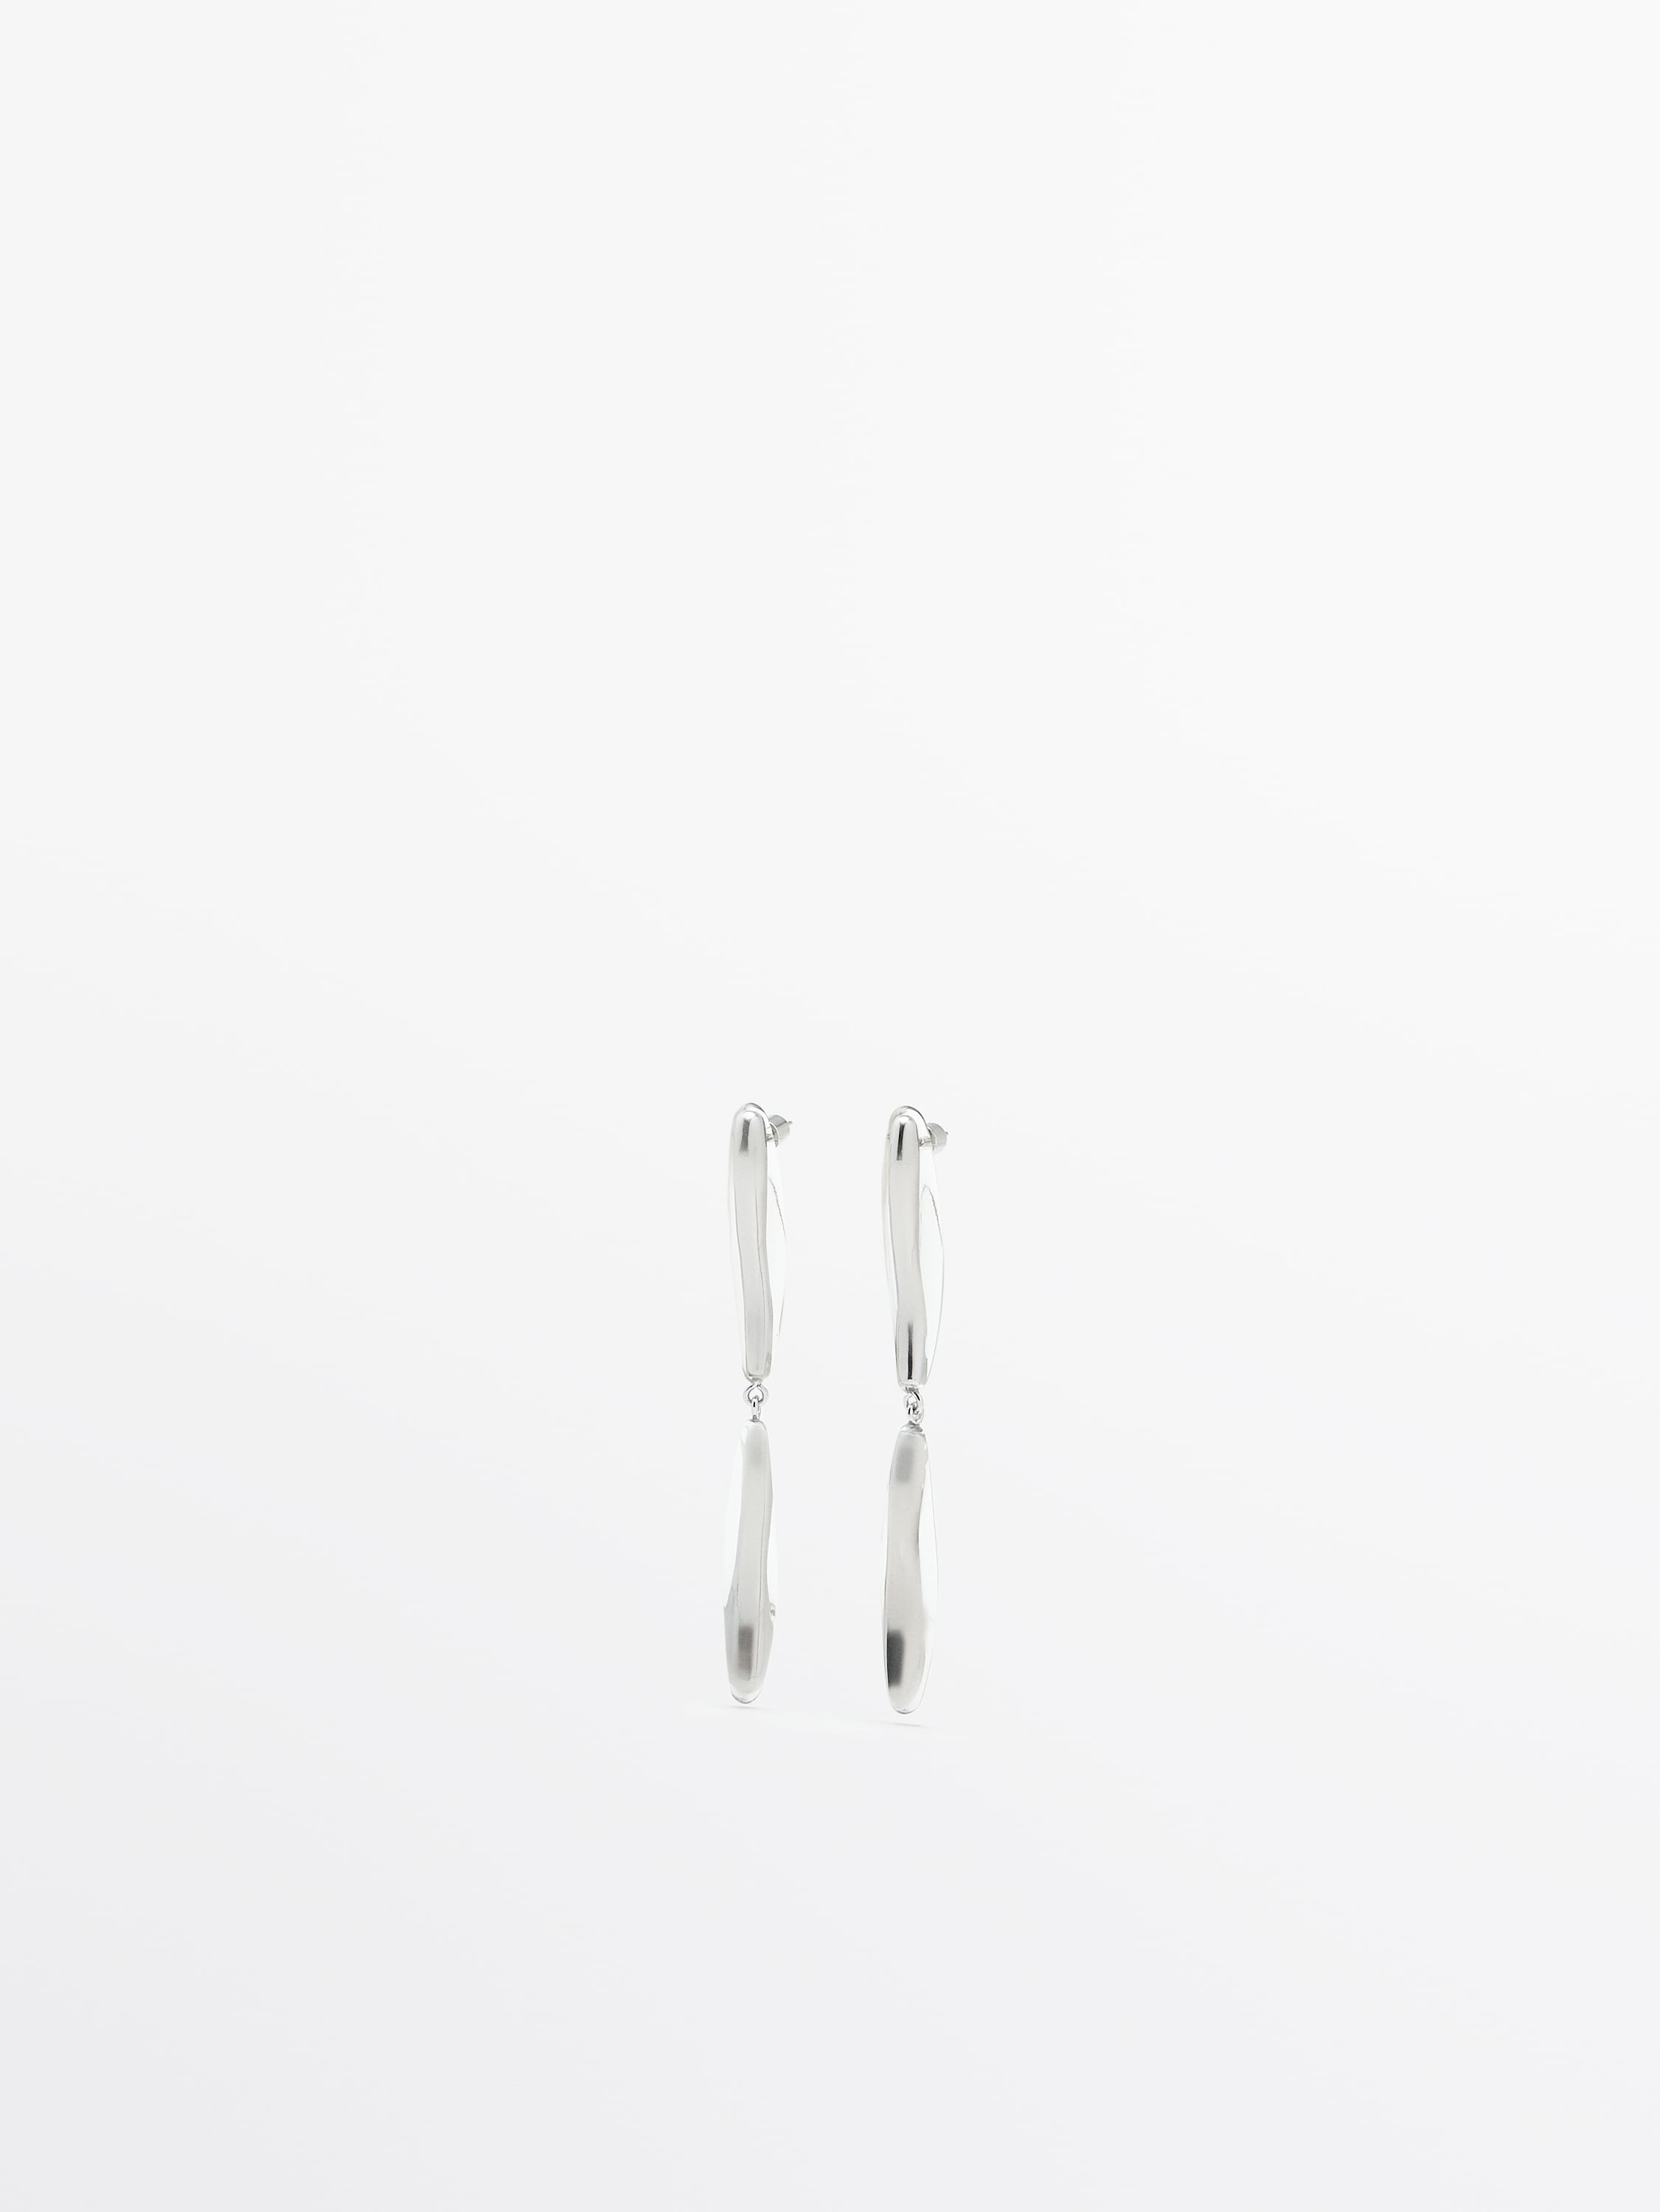 Teardrop dangle earrings - Limited Edition